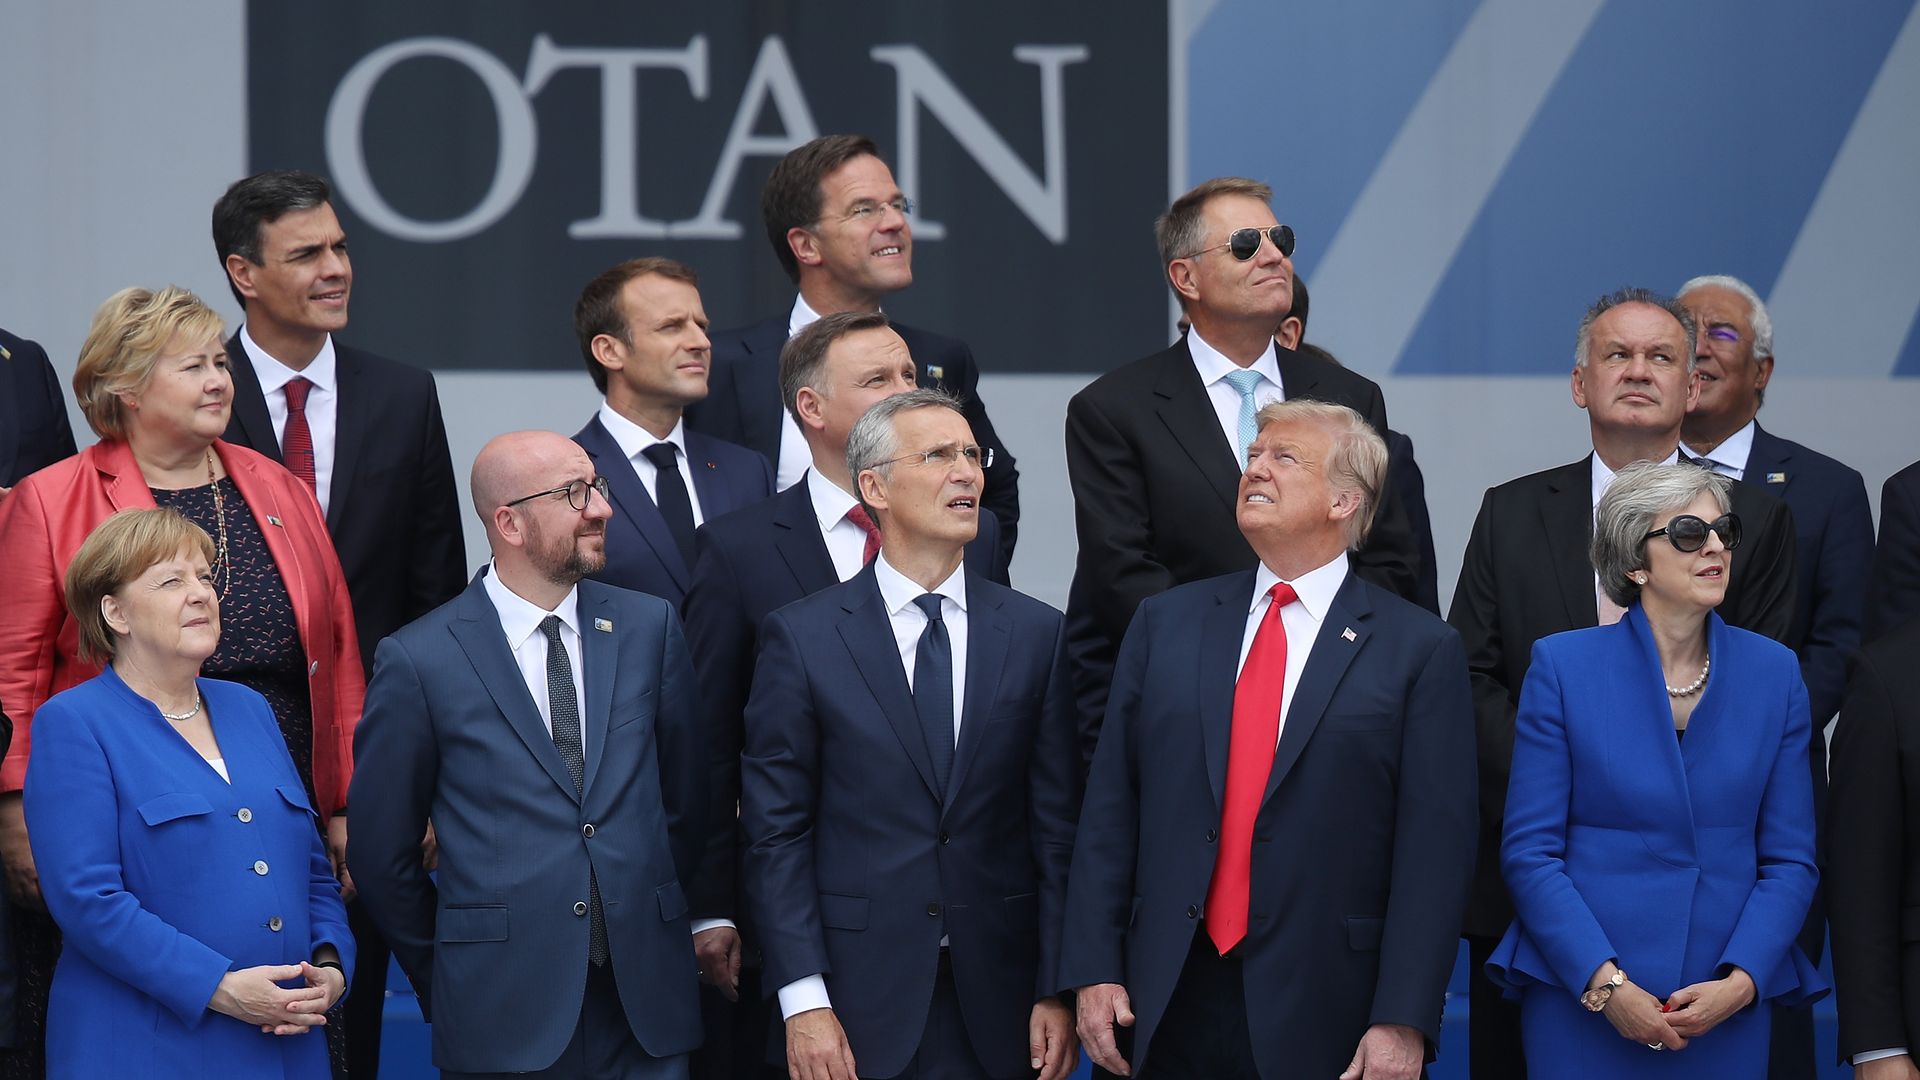 NATO summit